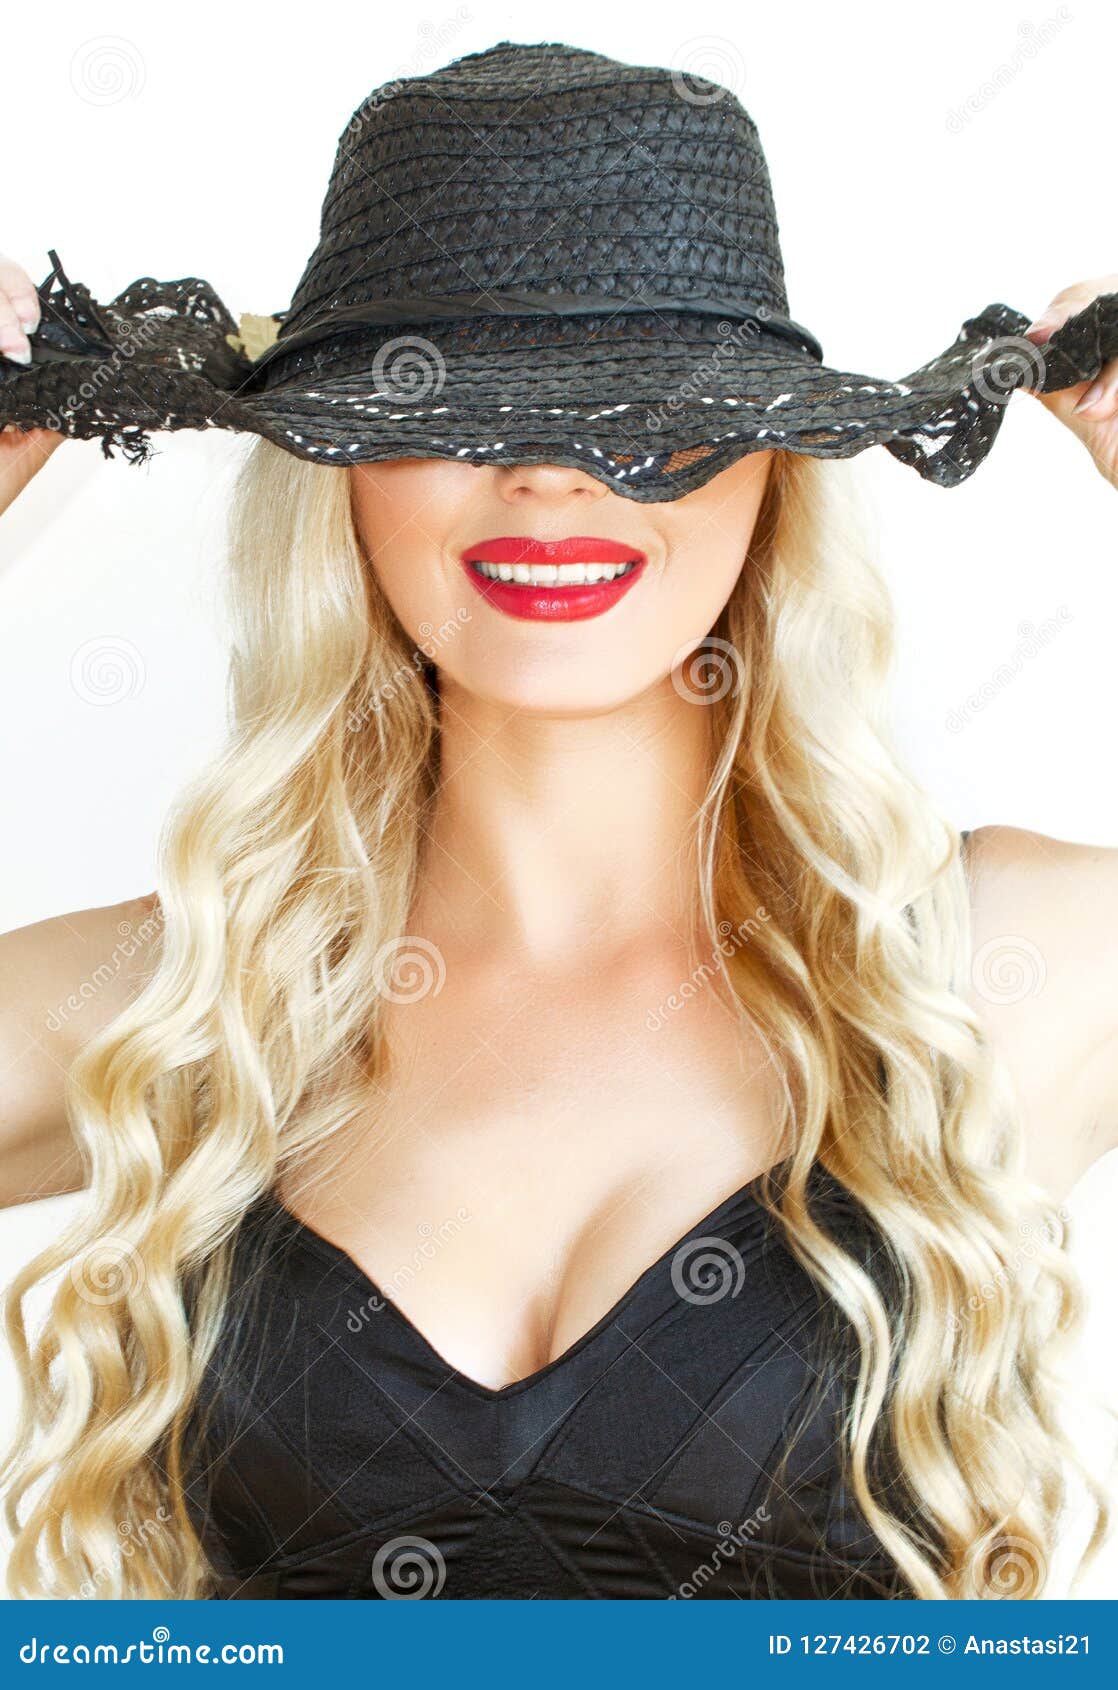 Знойная блондинка в экстравагантной шляпе